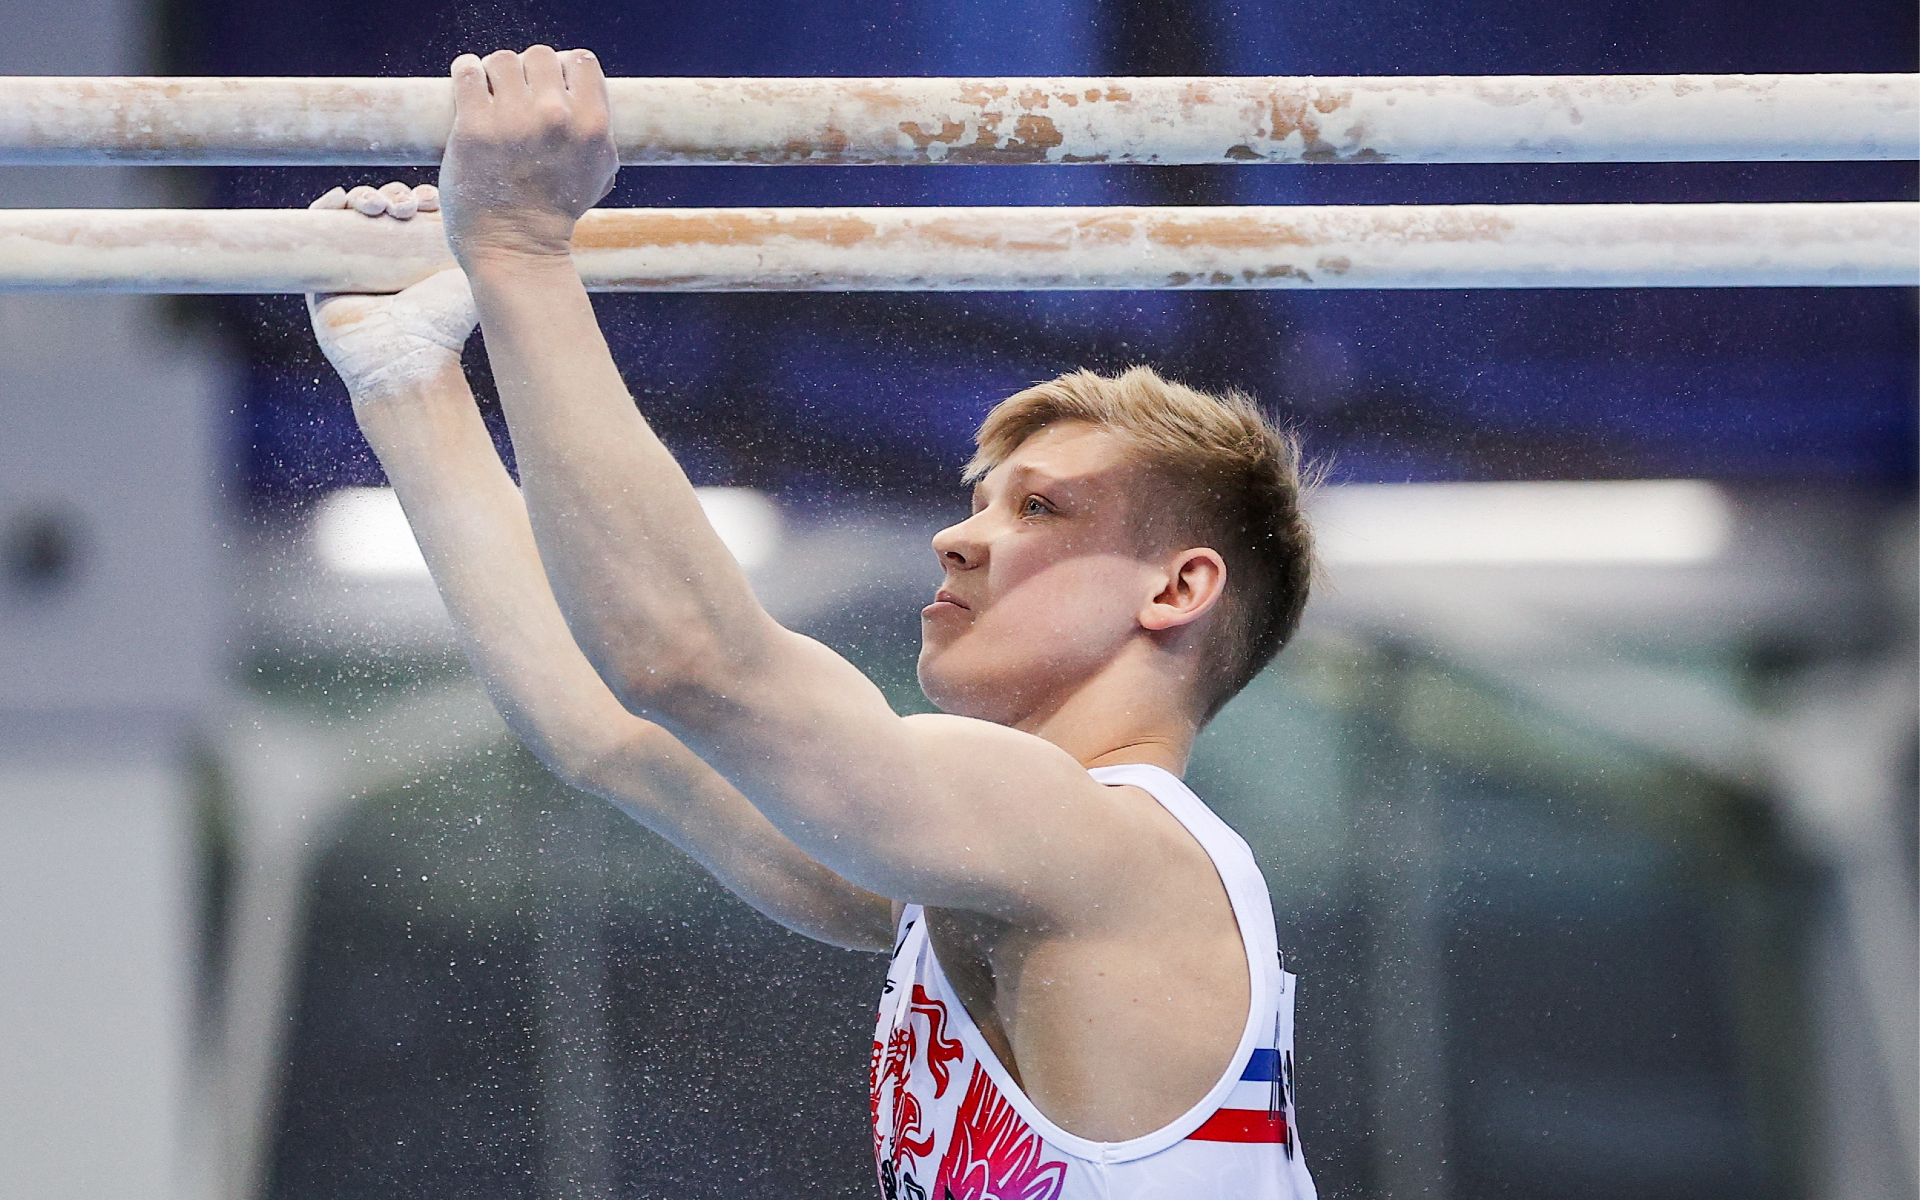 Дисквалифицированный за букву Z российский гимнаст подал апелляцию